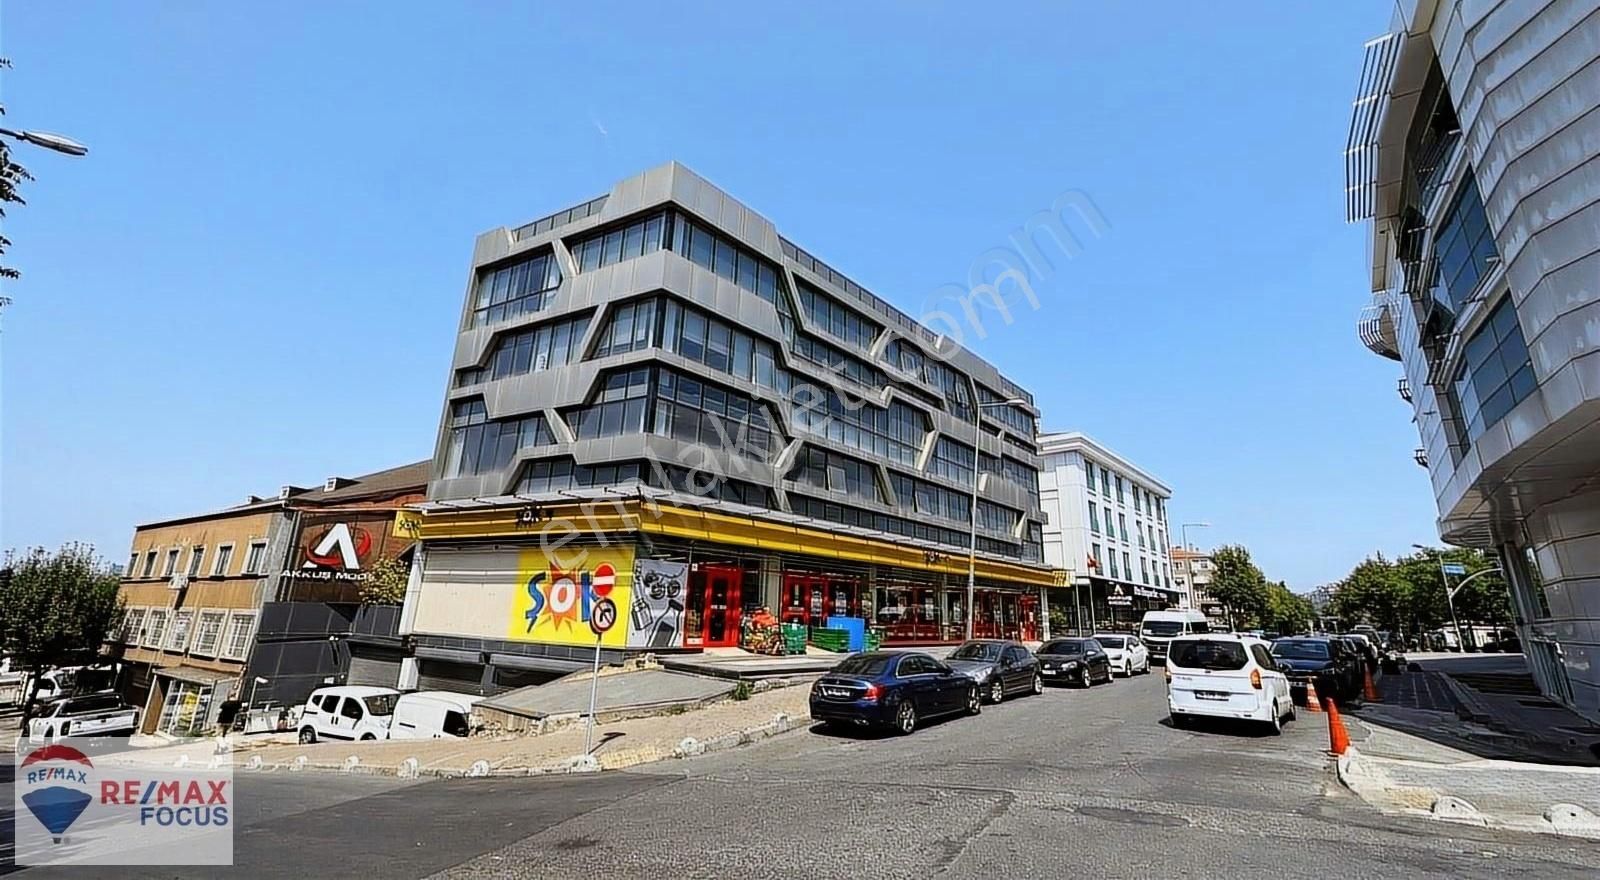 İstanbul Bahçelievler Kiralık Plaza Katı Bahçelievler Yenibosna 350m2 Kiralık Plaza Katı